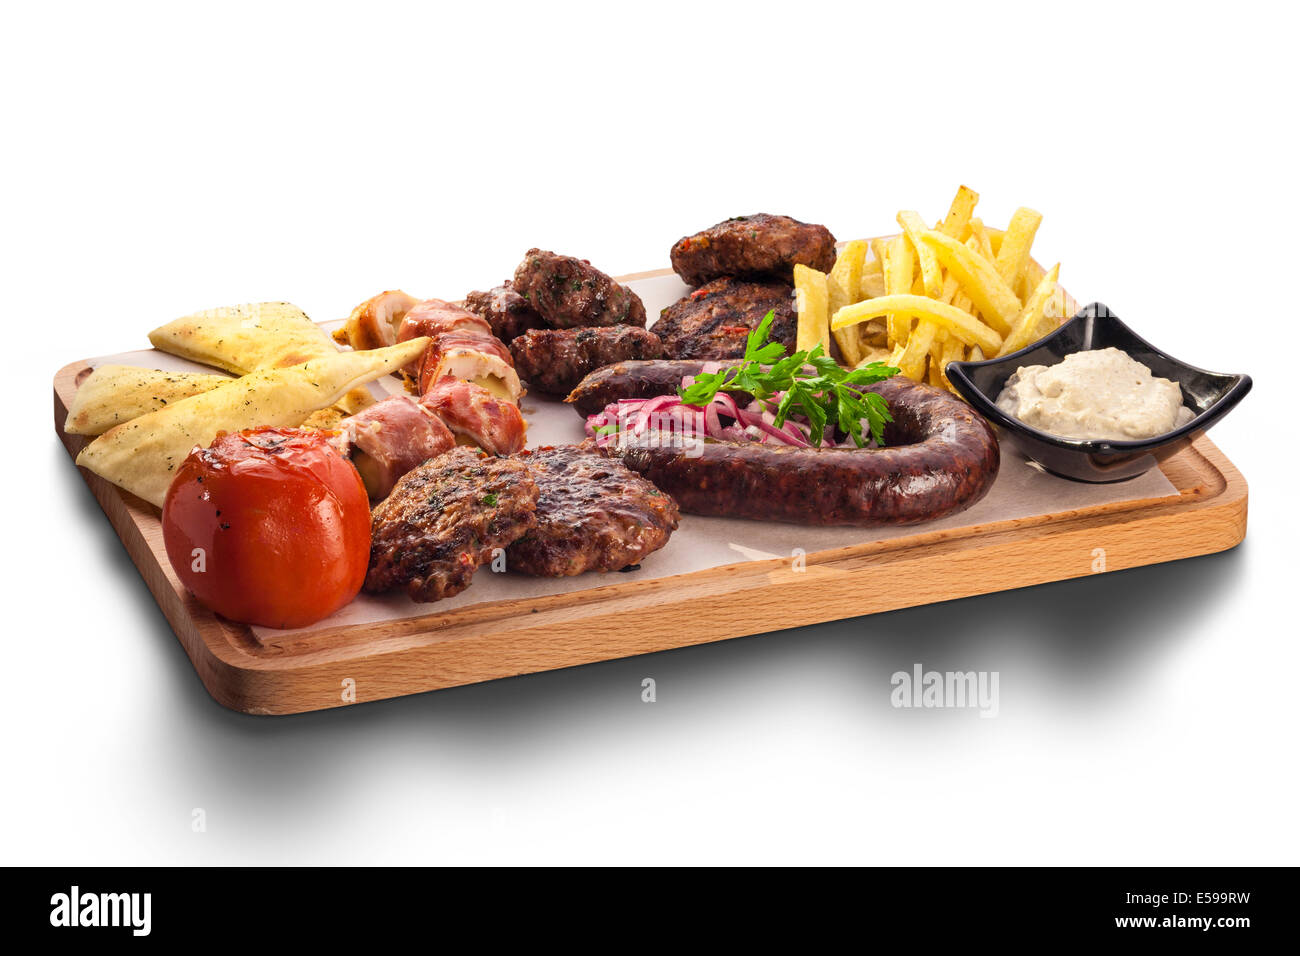 Plato saludable mezcla de carnes incluyendo bistec a la parrilla, nachos, pollo y carnes crumbed crujiente sobre un lecho de verdes frescos Foto de stock